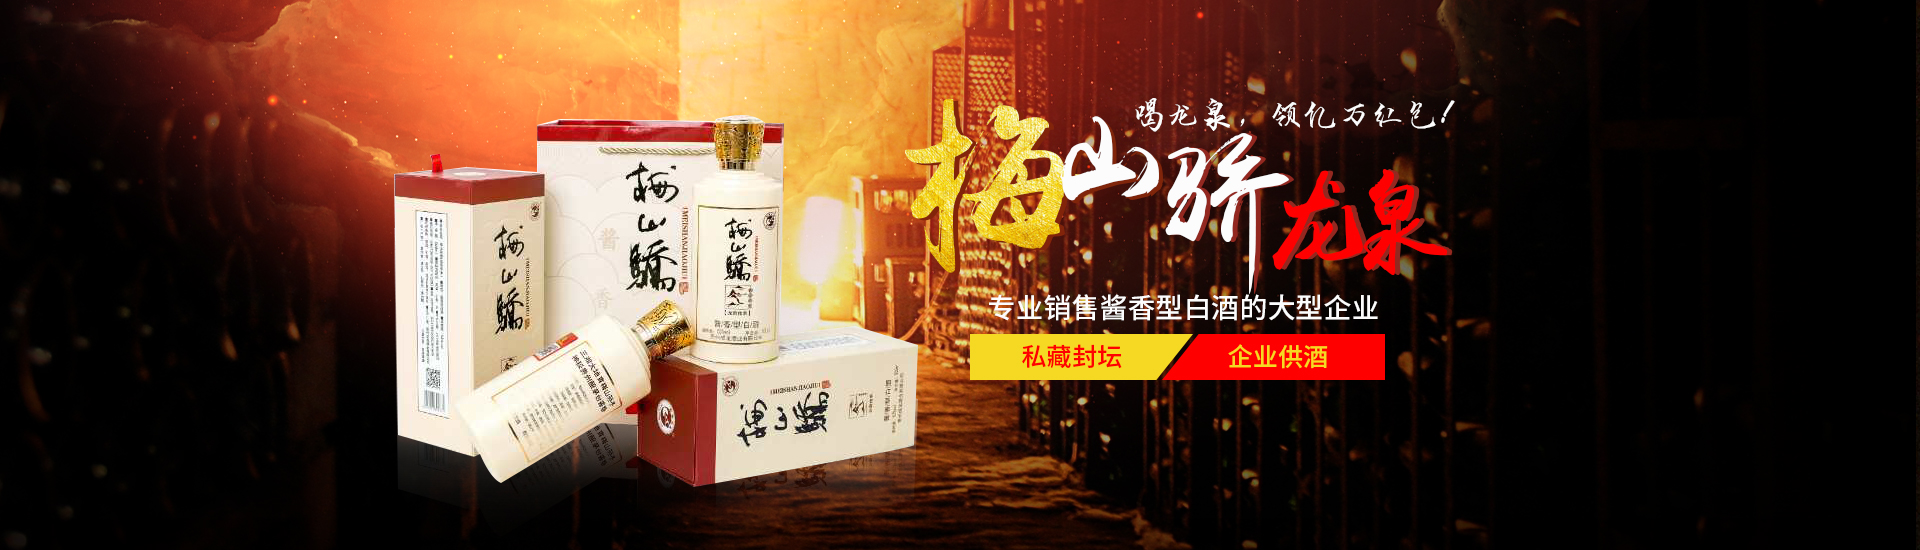 貴州聚賢酒業有限公司_益陽醬香型白酒銷售